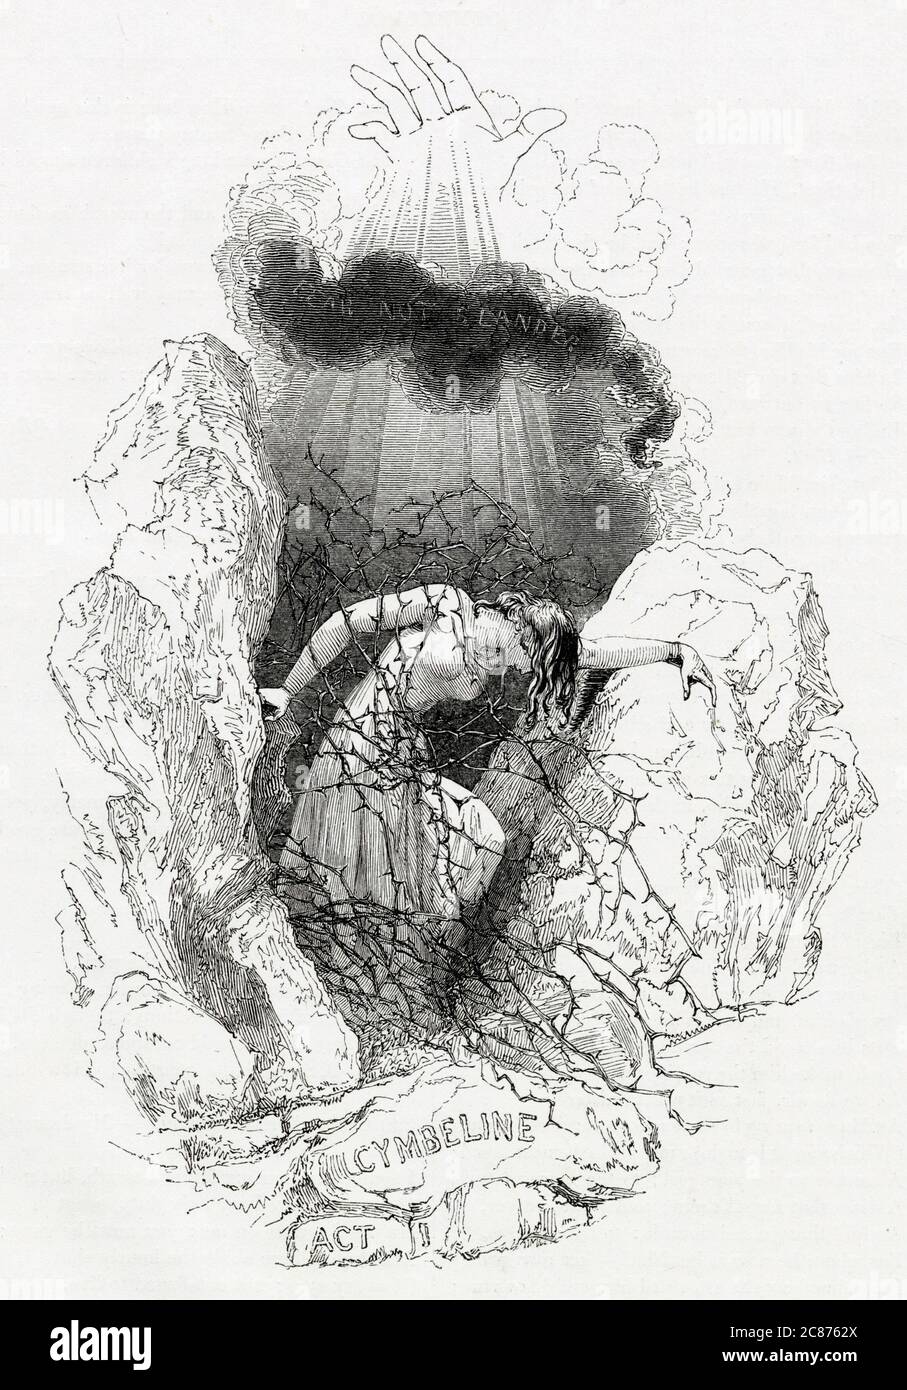 Illustration von Kenny Meadows zu Cymbeline, von William Shakespeare. Einleitende Illustration zu Akt I, die Imogen durch dornige Äste kämpfen zeigt. Datum: 1840 Stockfoto